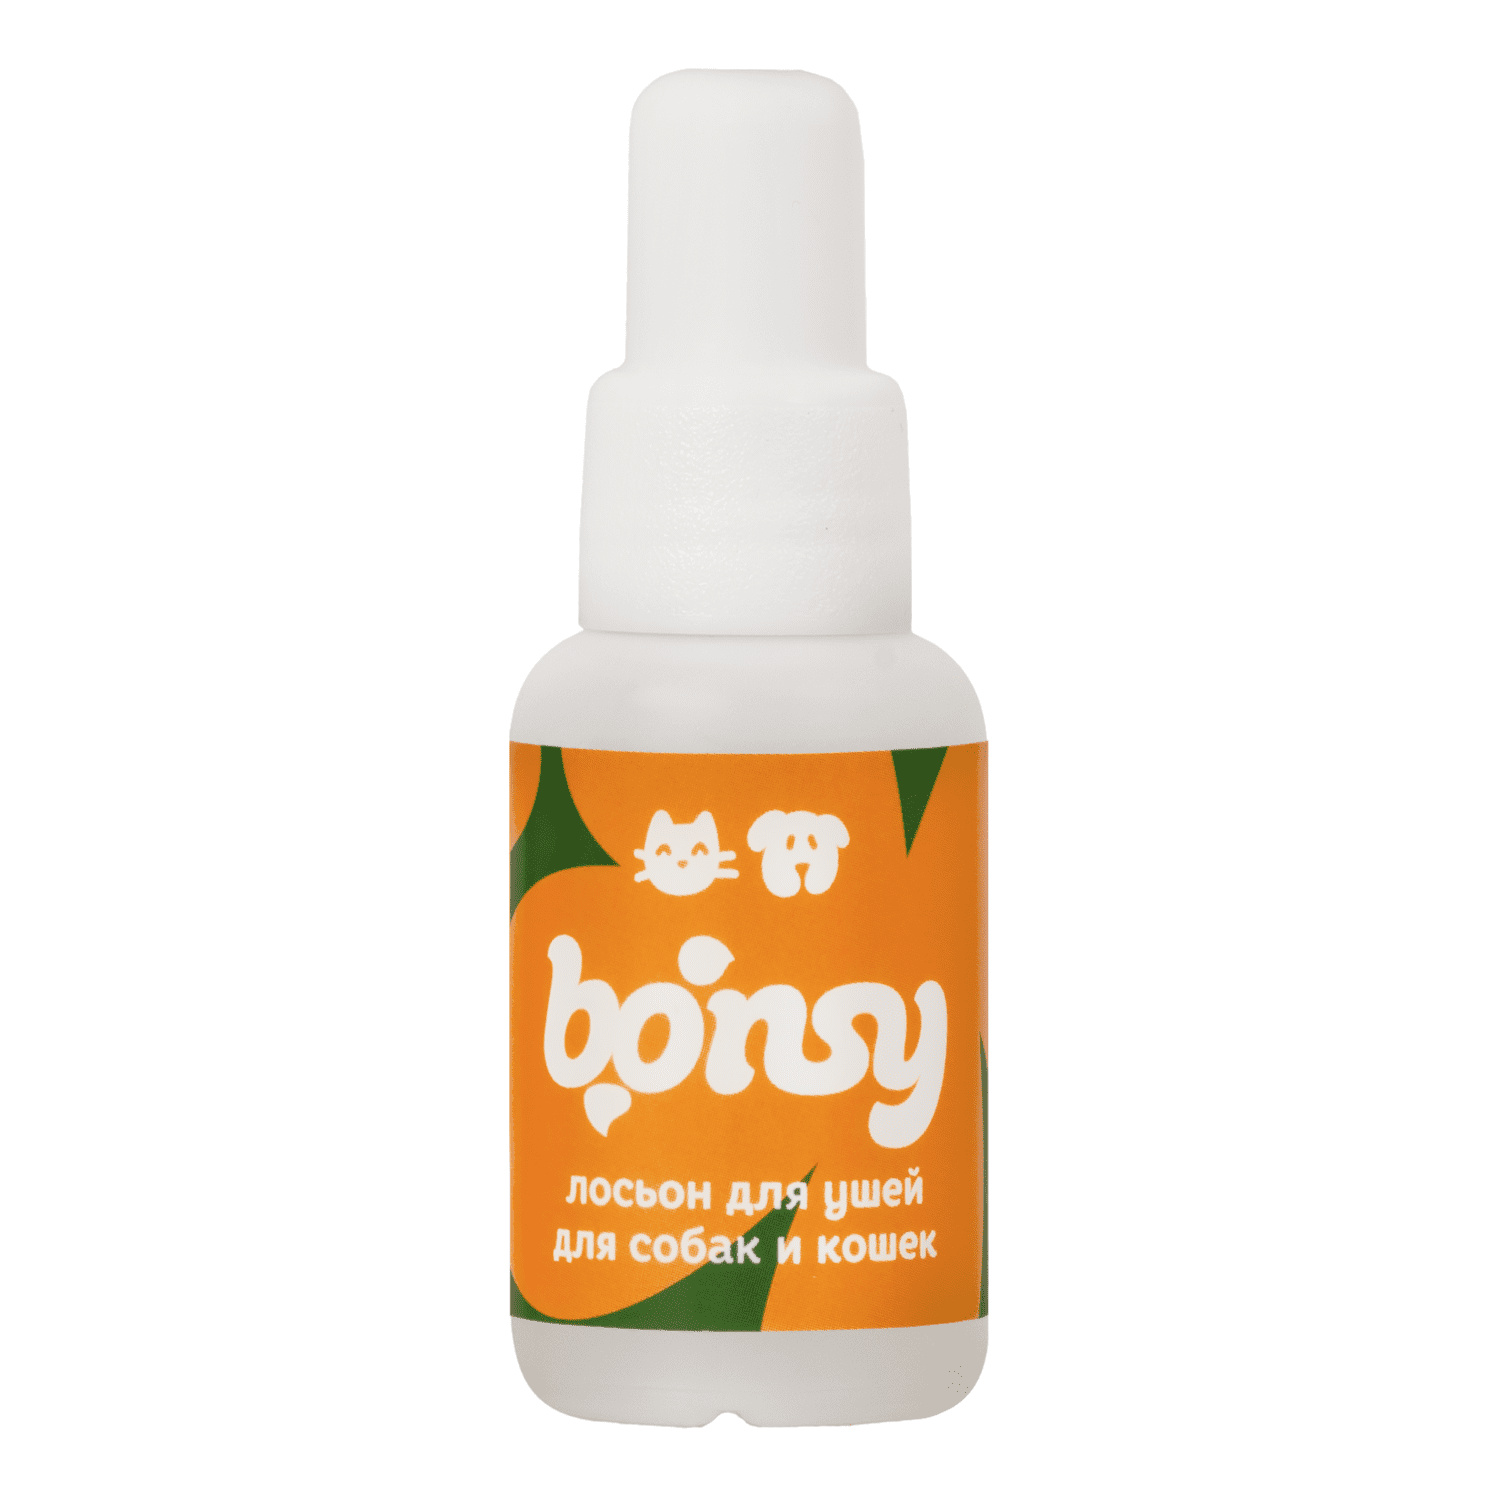 Bonsy Bonsy лосьон для очистки ушей кошек и собак (30 г) bonsy bonsy антипаразитарные биокапли на холку для щенков и собак крупных пород 30 г